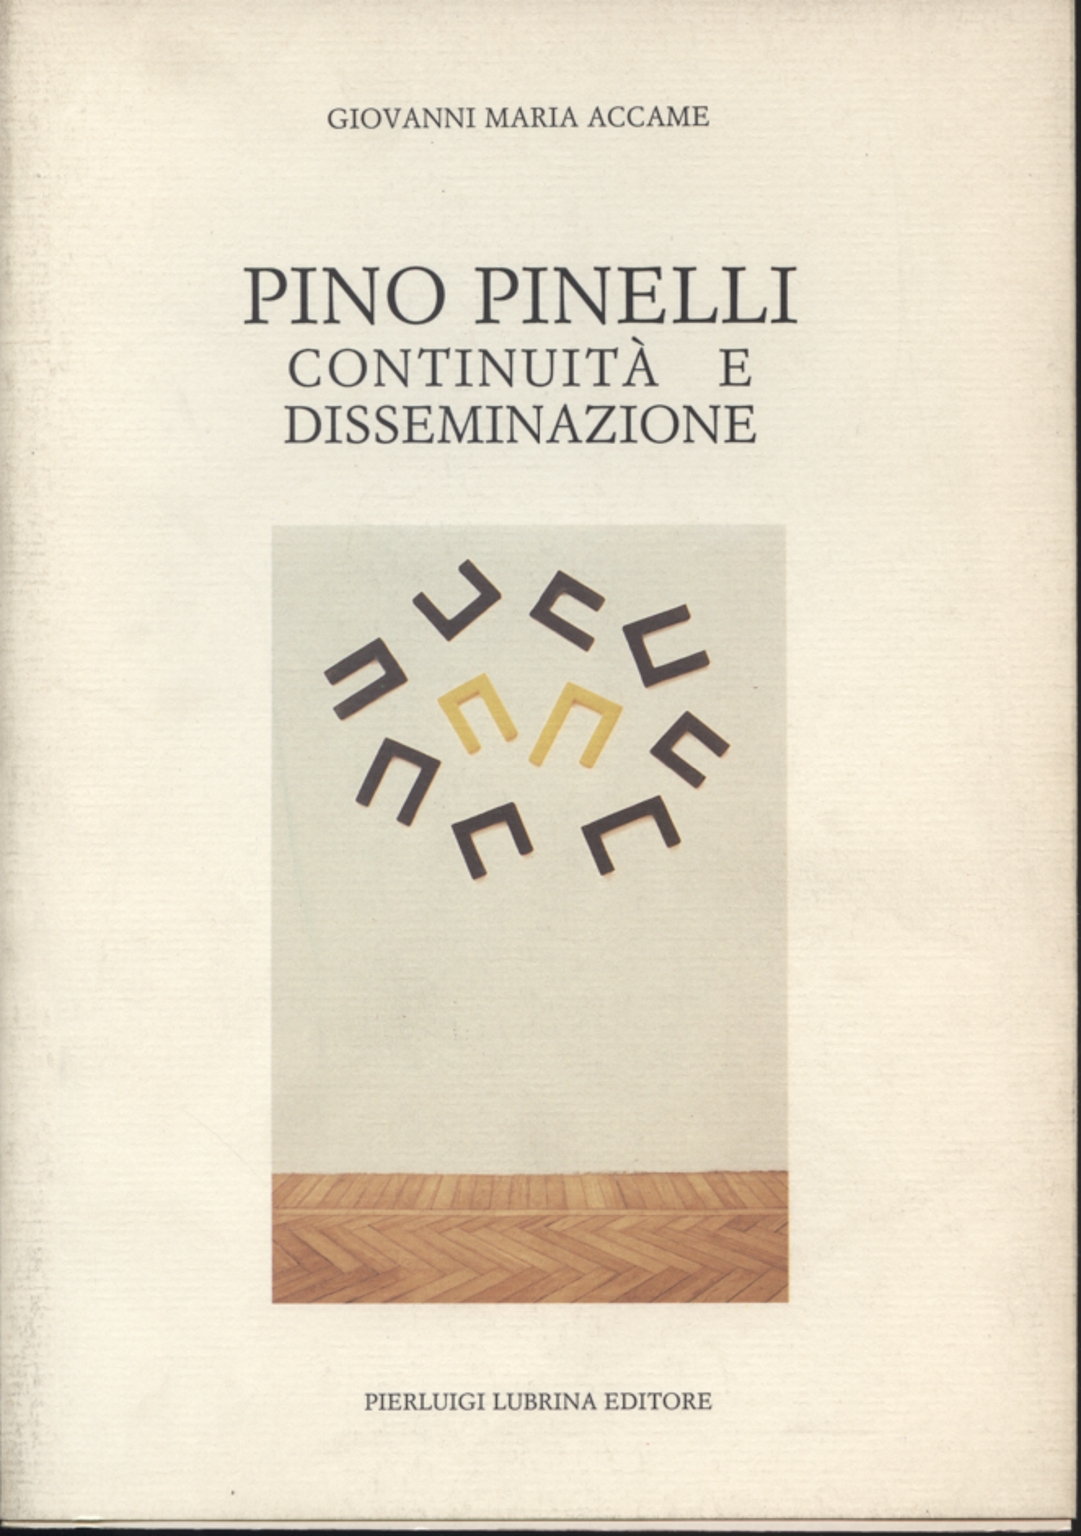 Pino Pinelli: continuidad y difusión, Giovanni Maria Accame